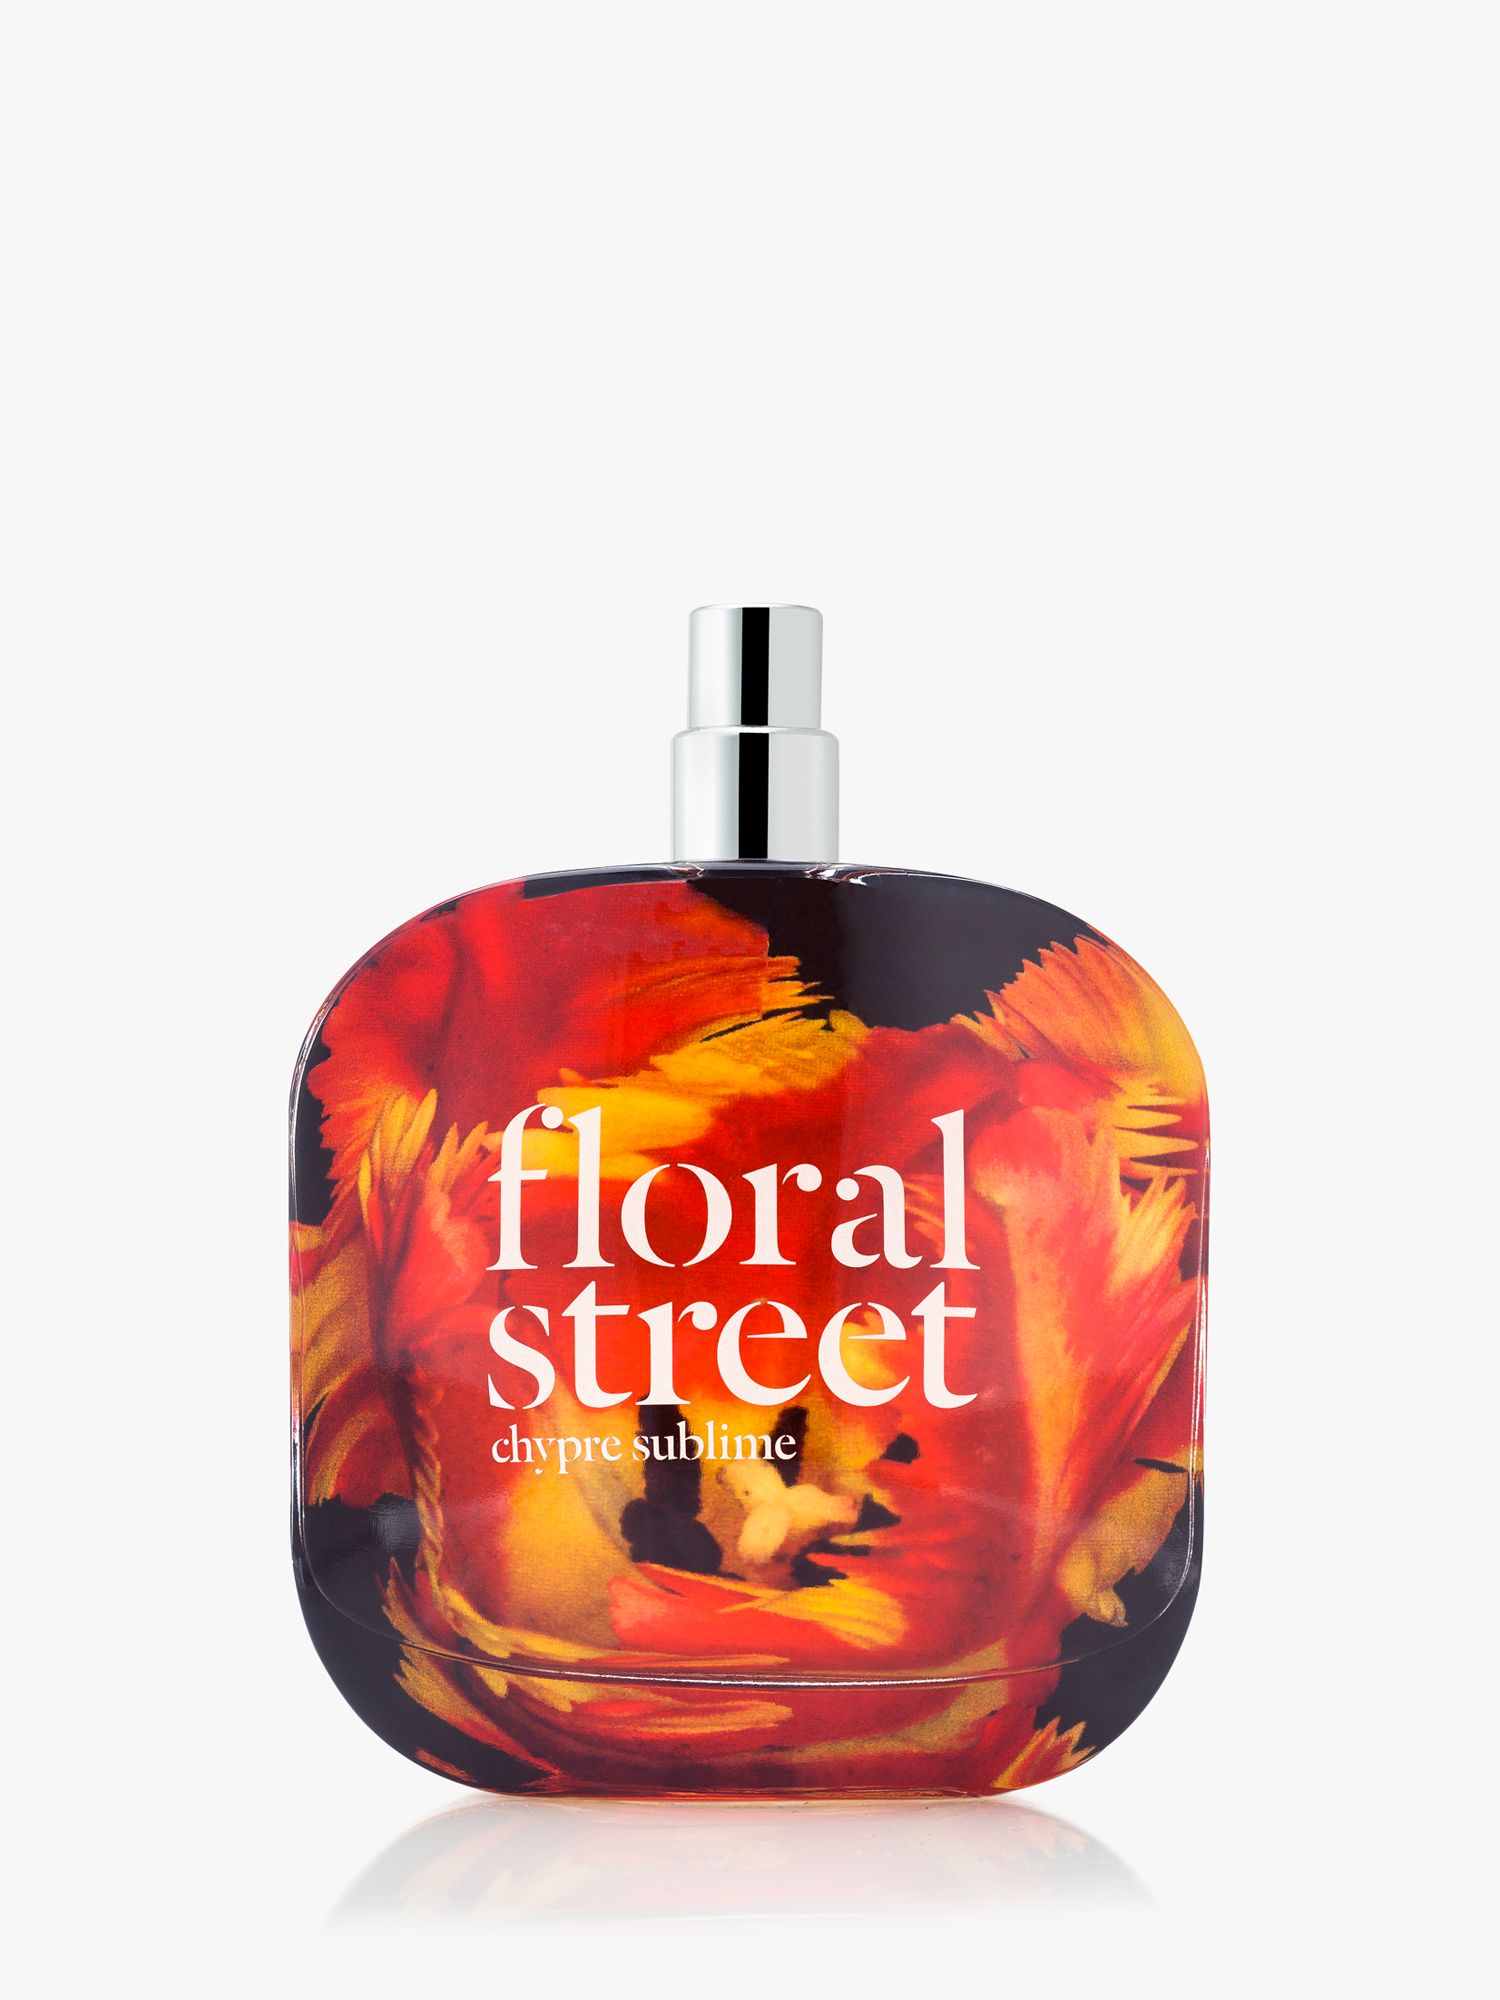 Floral Street Chypre Sublime Eau de Parfum, 100ml at John Lewis & Partners